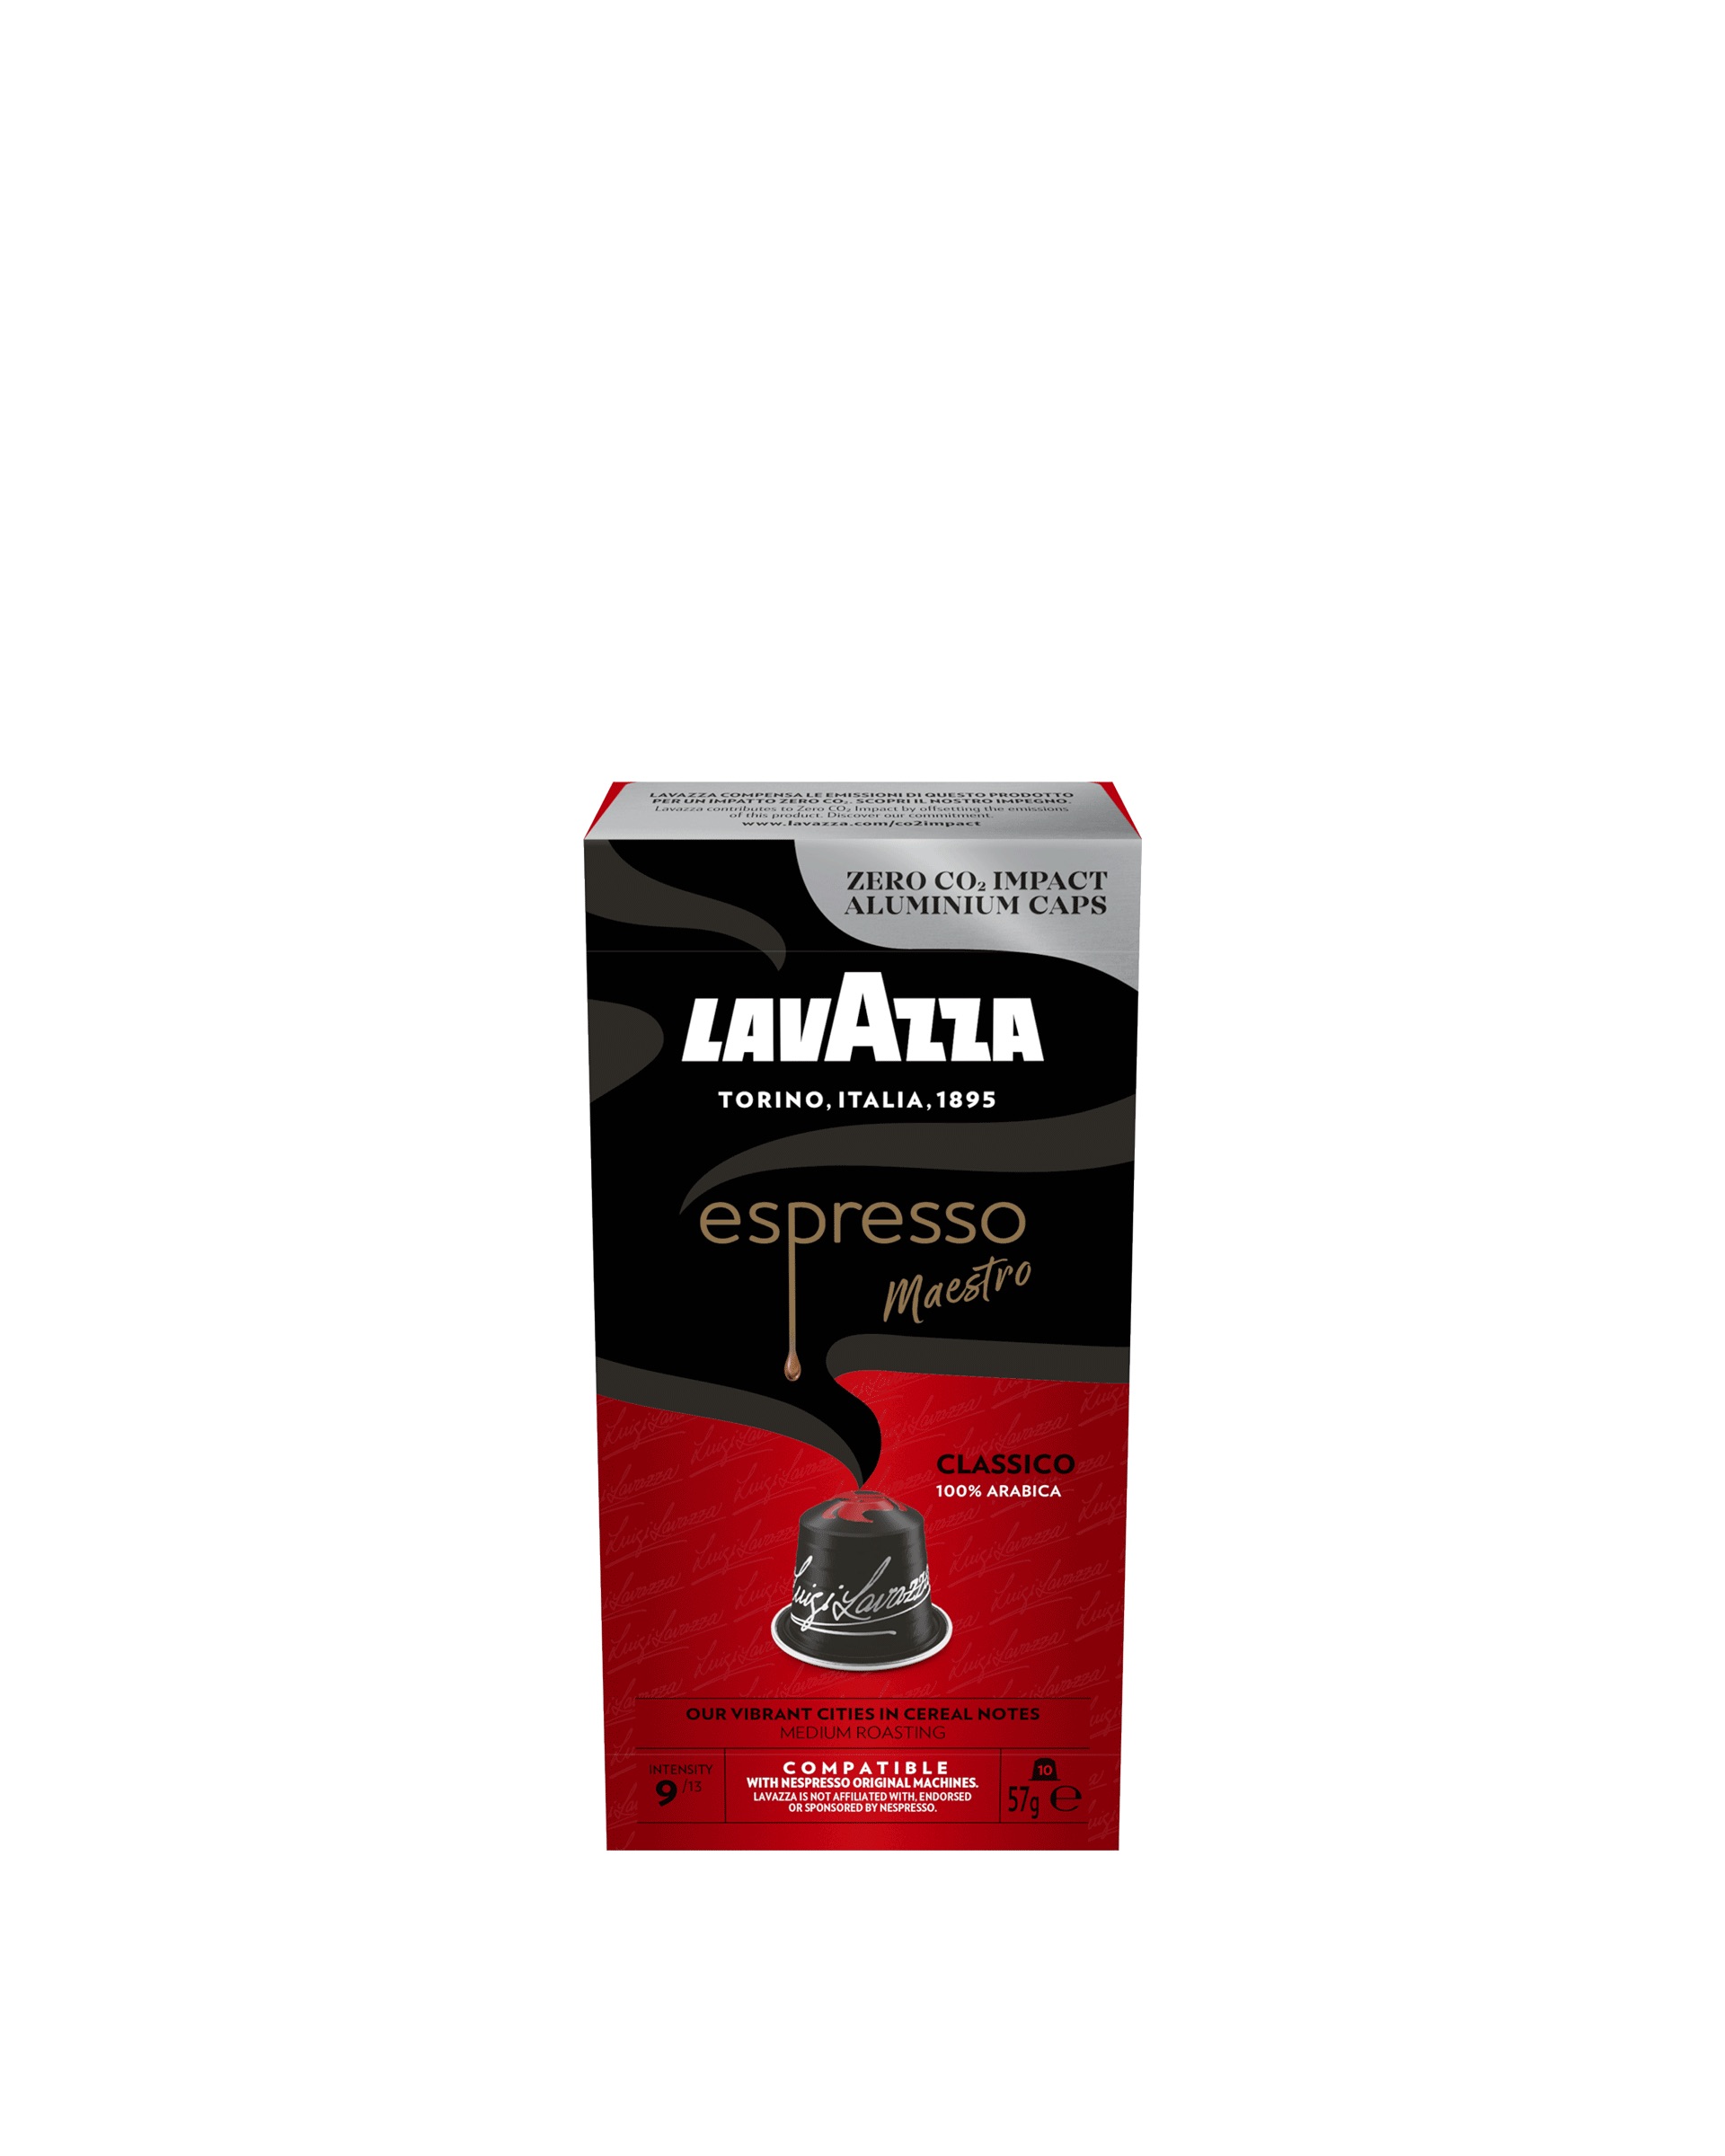 Lavazza Nespresso Coffee Capsules espresso maestro classico, 10